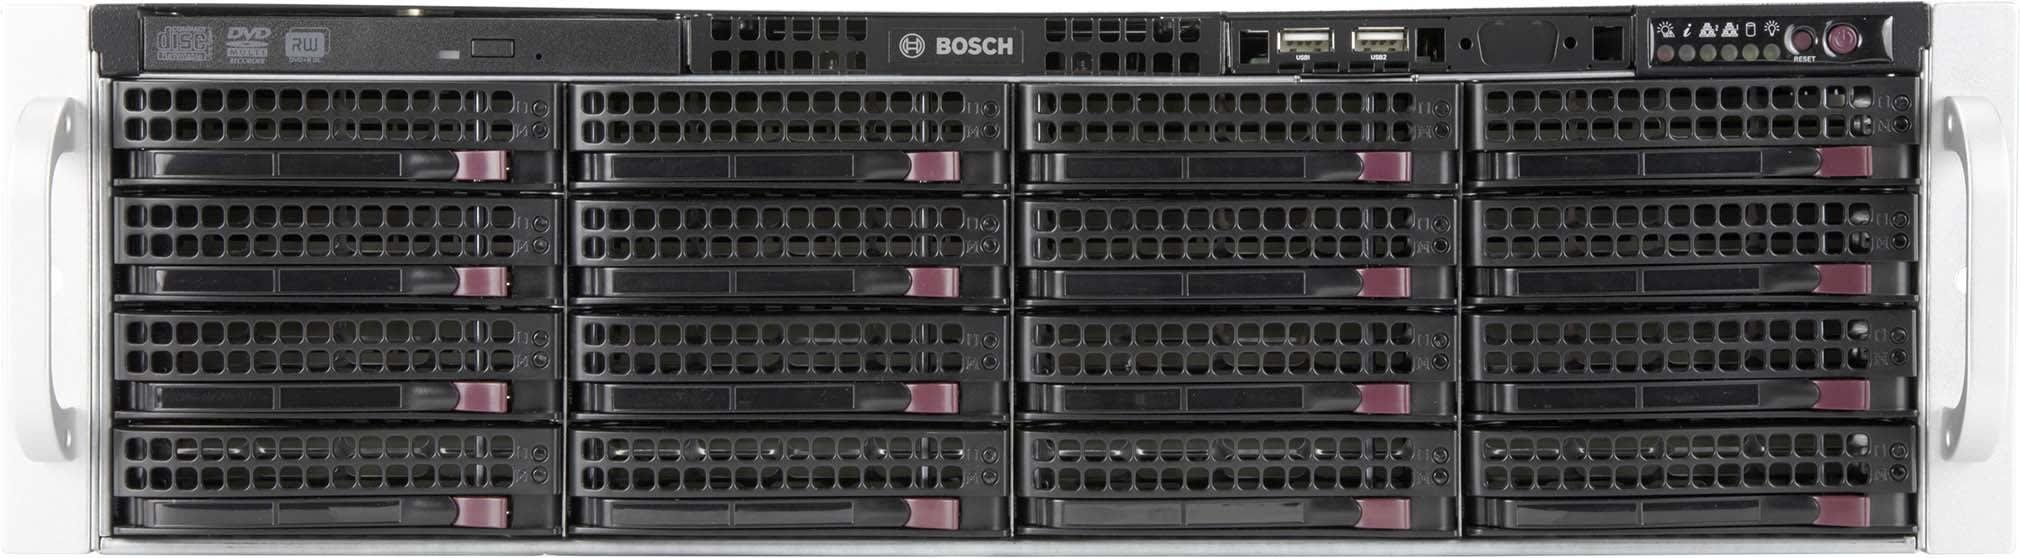 Bosch Security Systems - Solution d'enregistrement, d'affichage et de gestion tout-en-un pour les reseaux